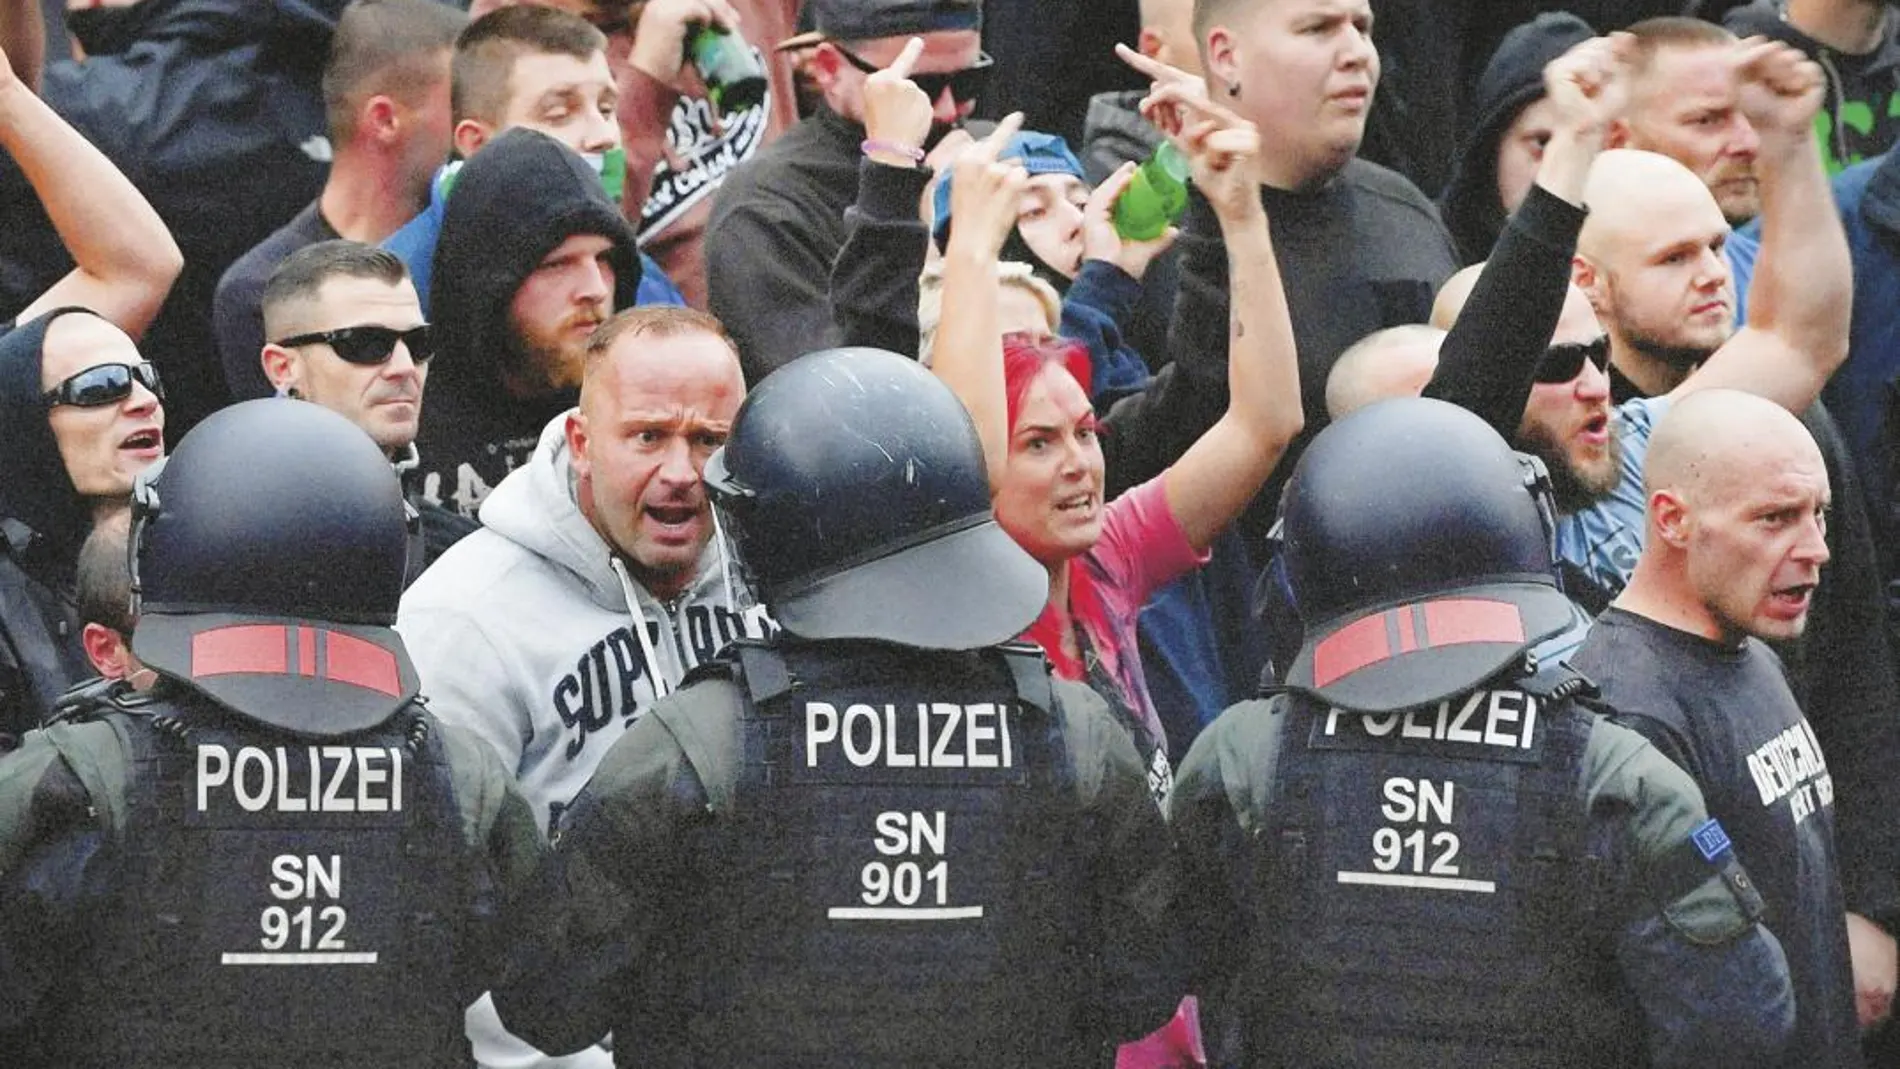 Decenas de manifestantes ultras participaron esta semana en varias marchas de protesta en la ciudad de Chemnitz, al este de Alemania, contra la llegada de inmigrantes